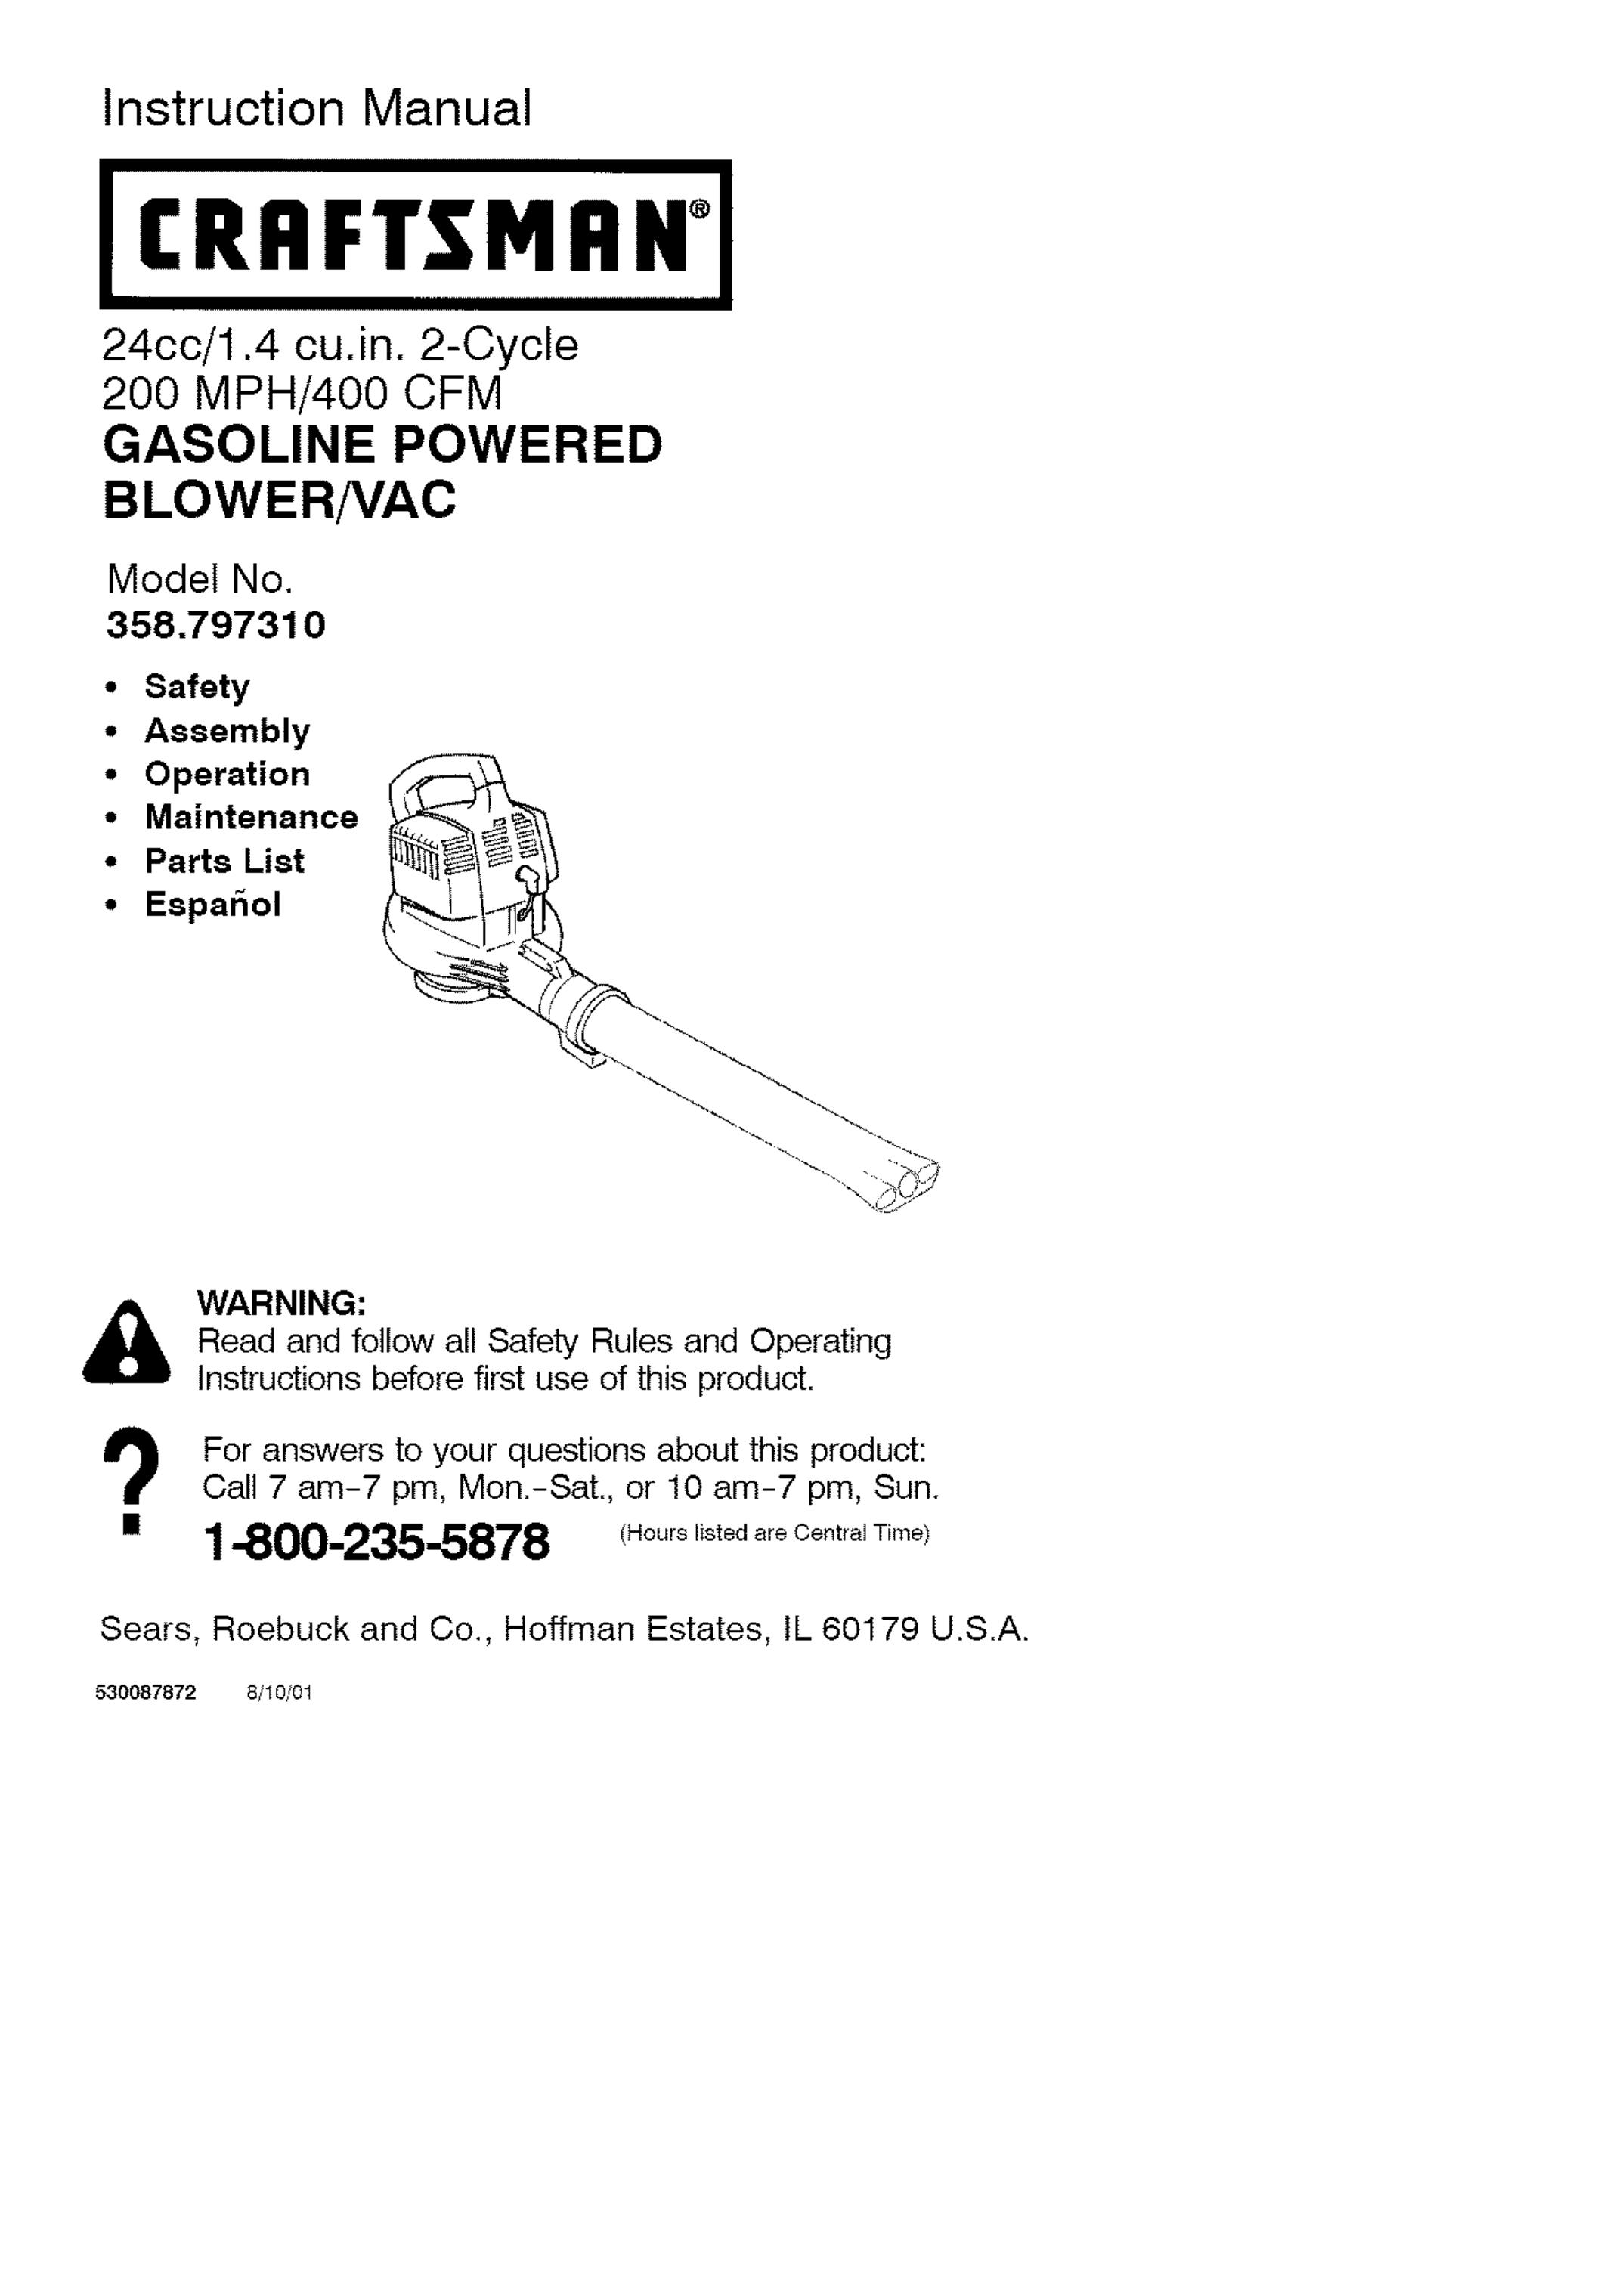 Craftsman 358.79731 Blower User Manual